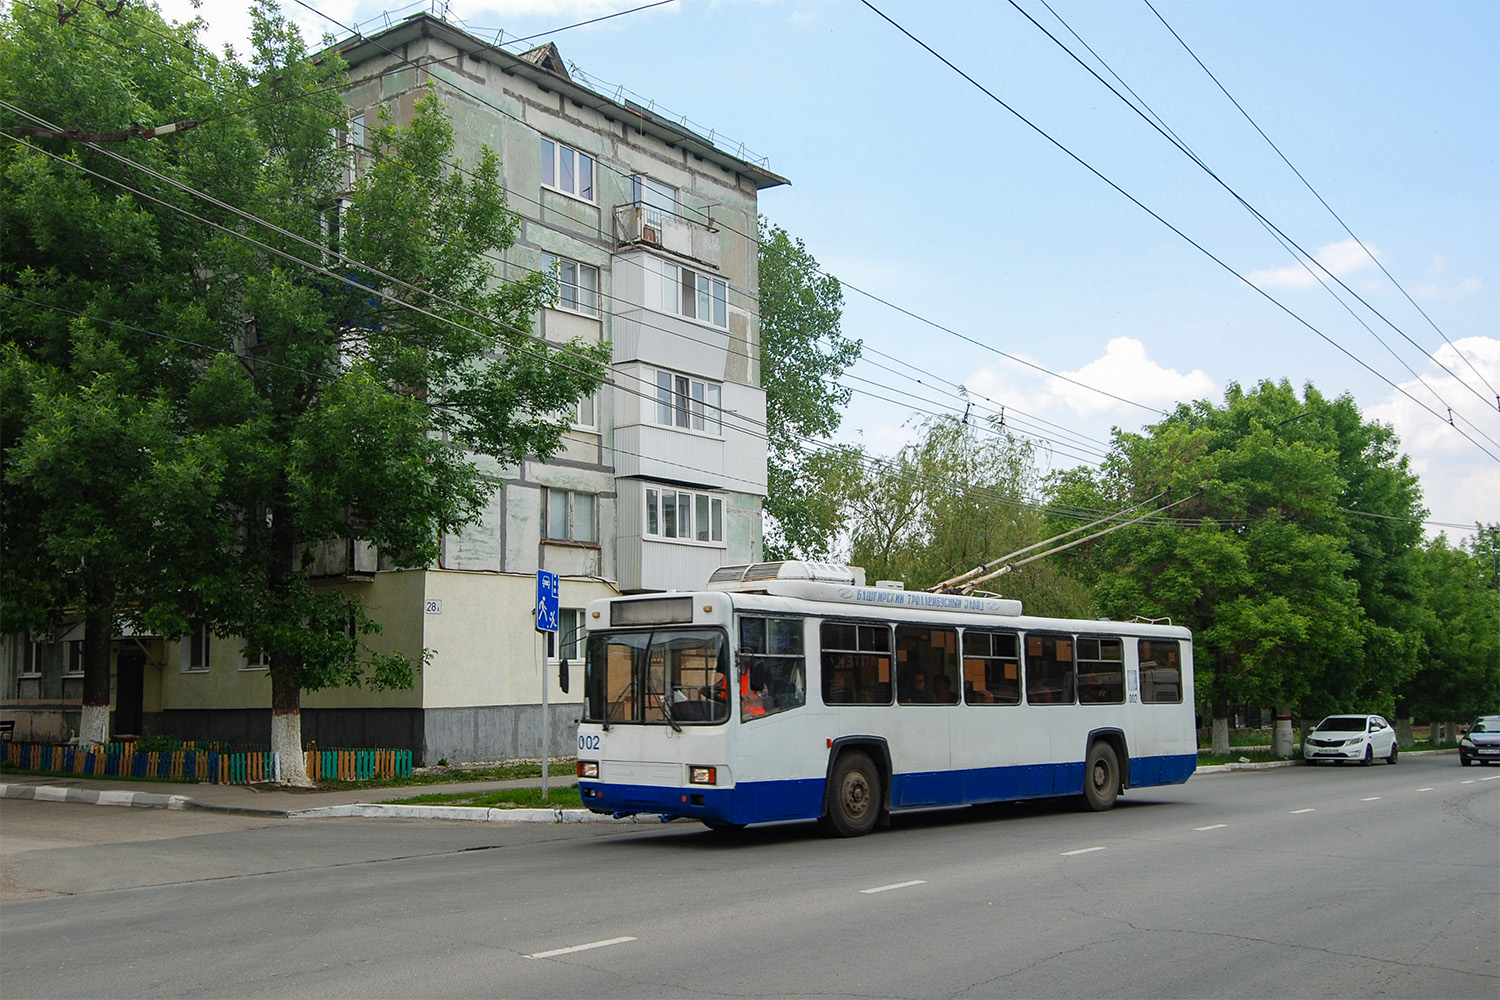 Novokujbyshevsk, BTZ-52761R # 002